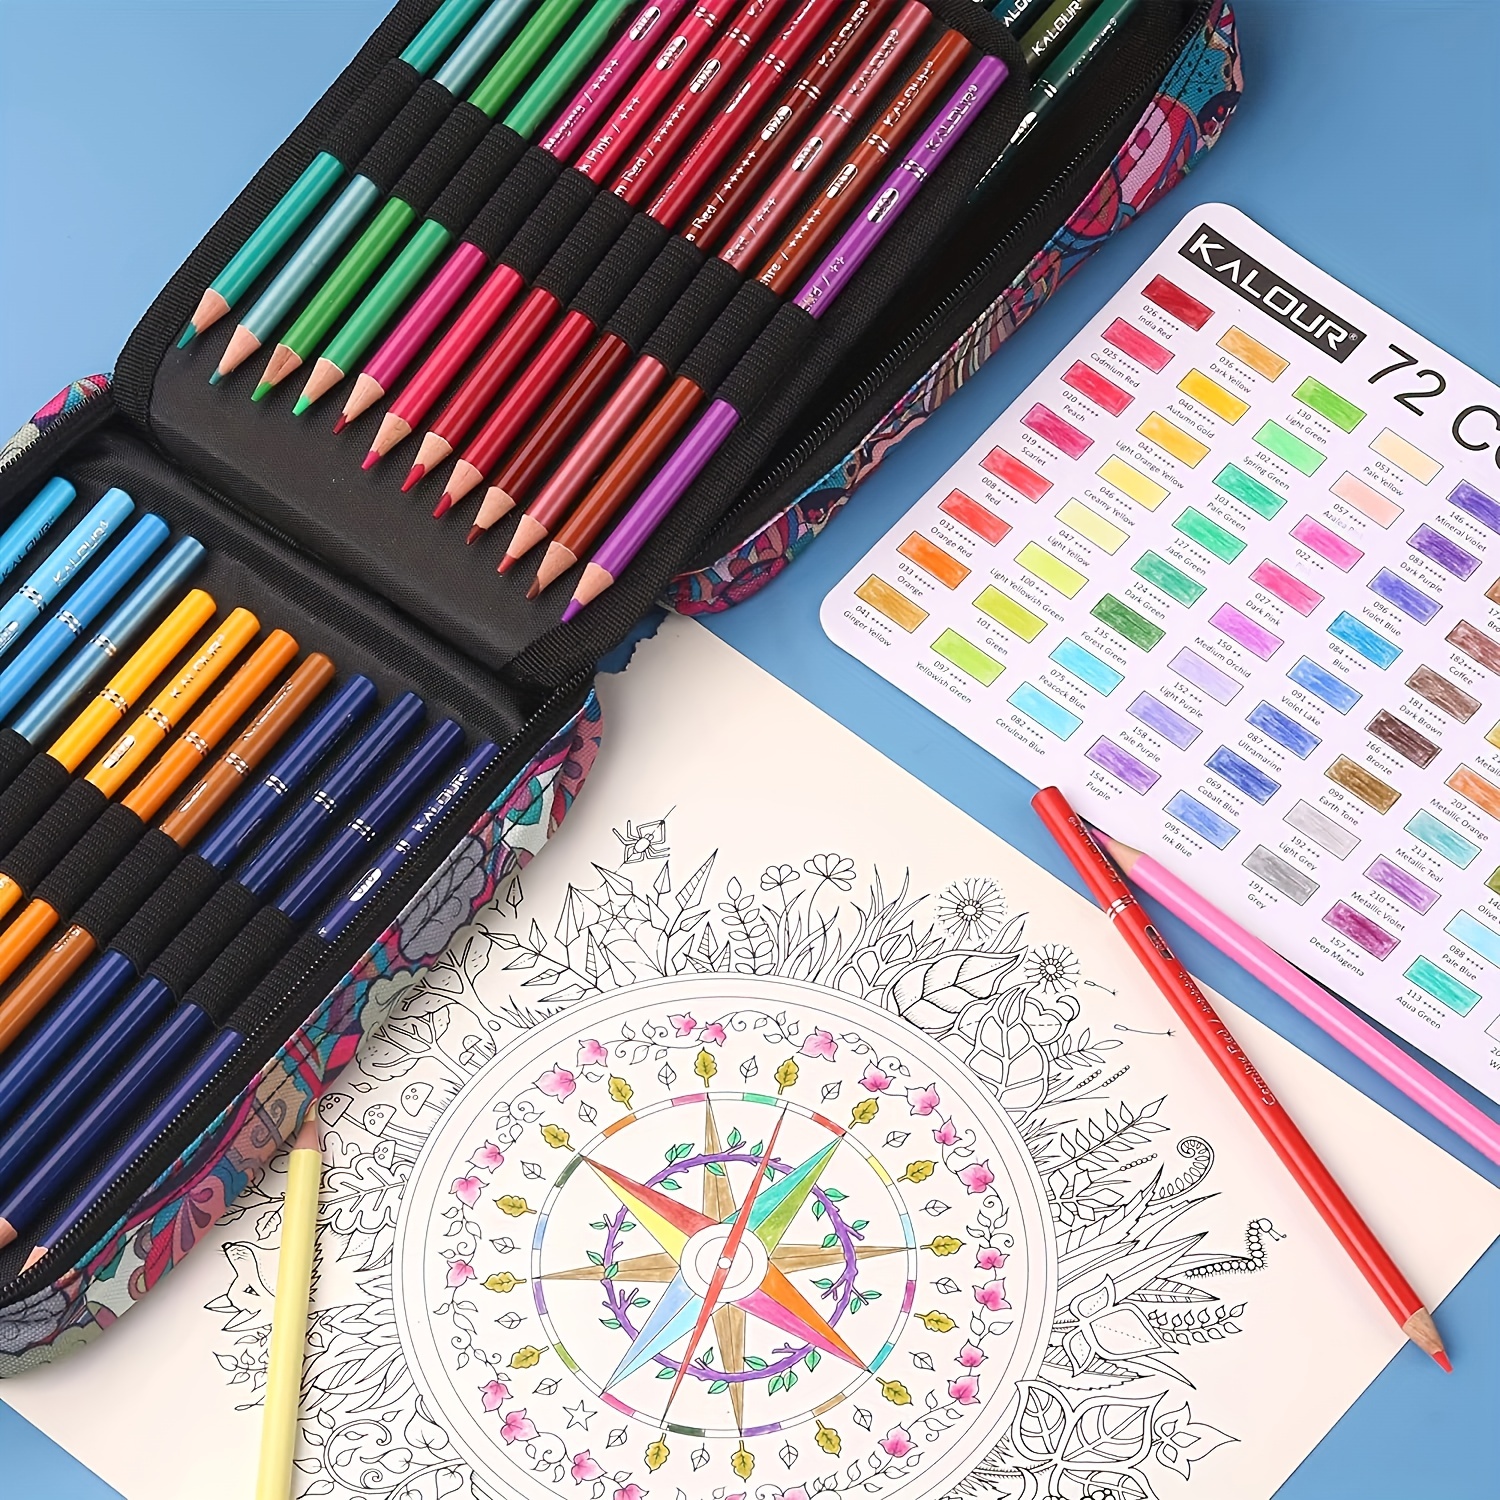  KALOUR Premium Colored Pencils,Set of 72 Colors